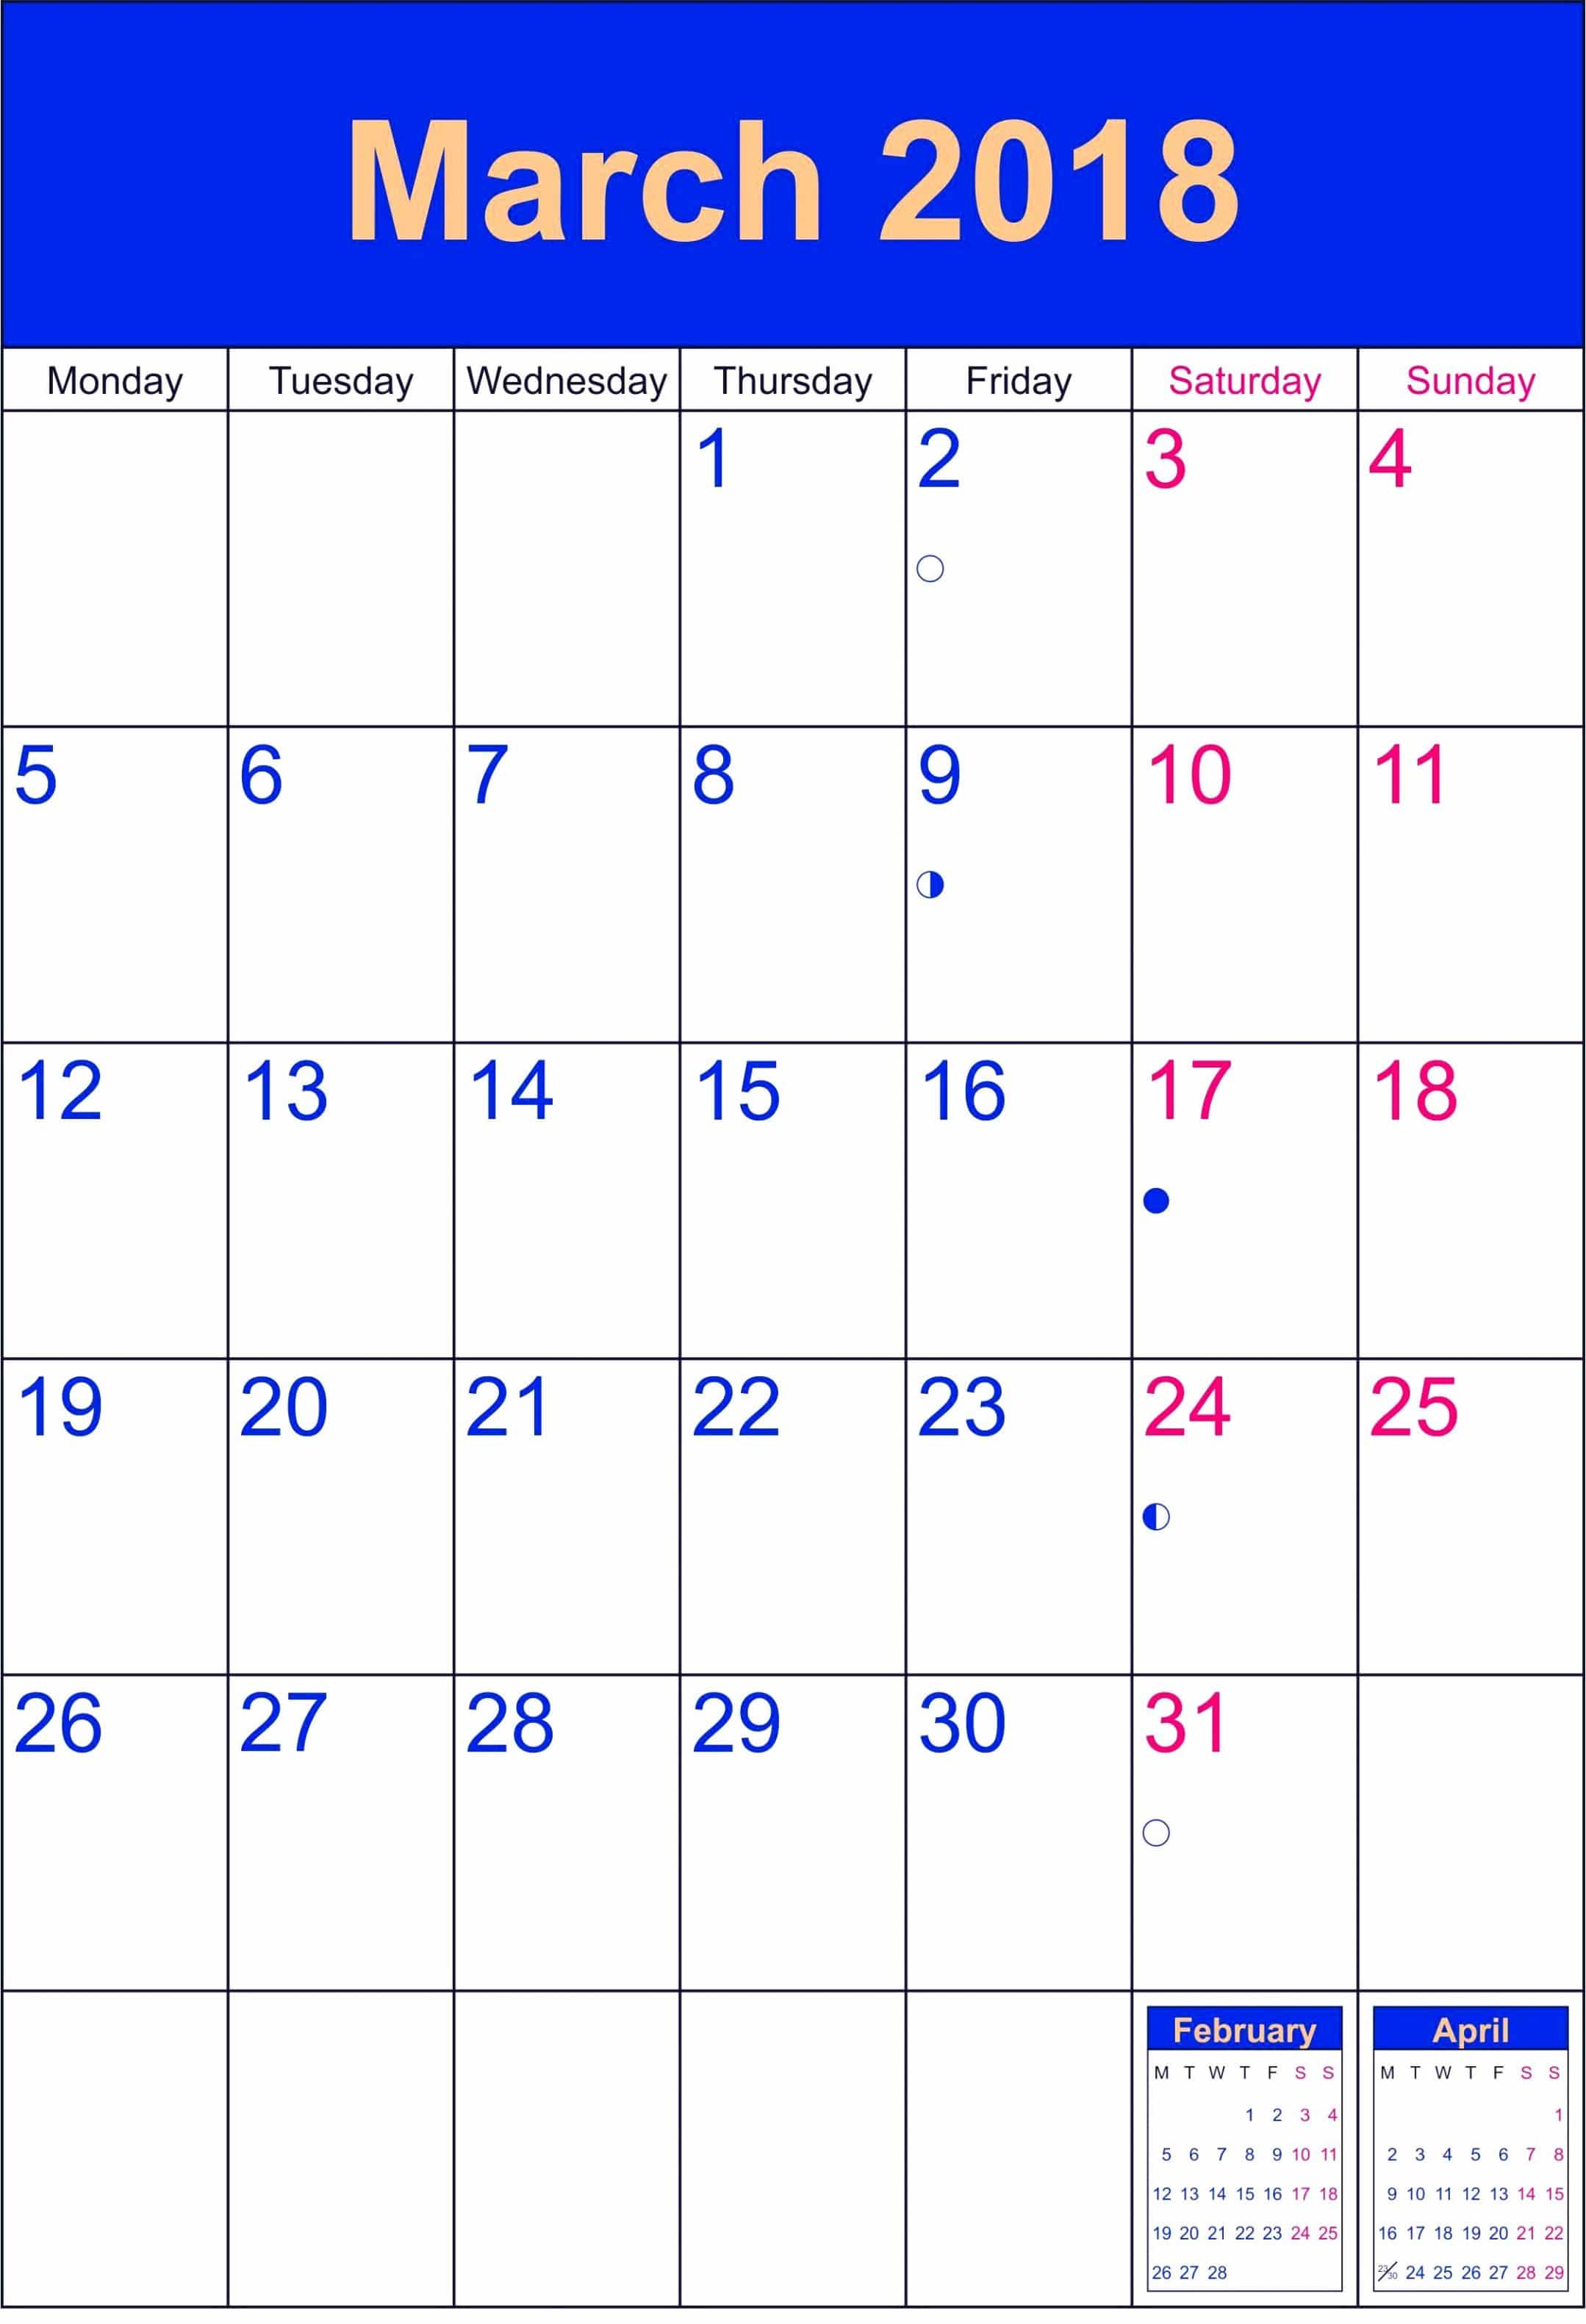 March 2018 Calendar Excel